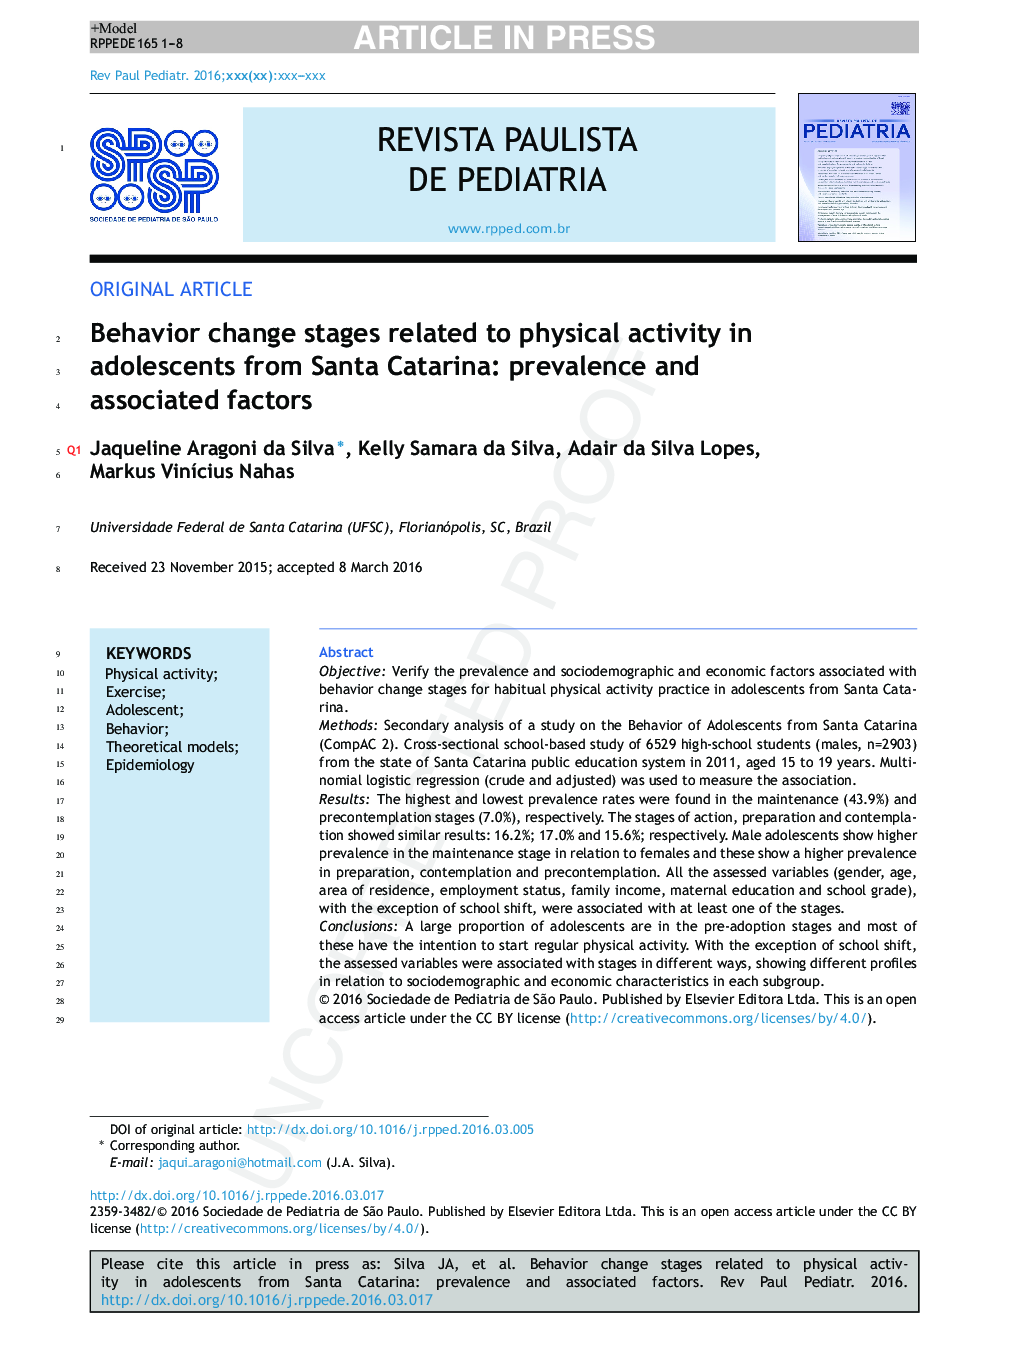 مراحل تغییر رفتار مربوط به فعالیت بدنی در نوجوانان سانتا کاتارینا: شیوع و عوامل مرتبط با آن 